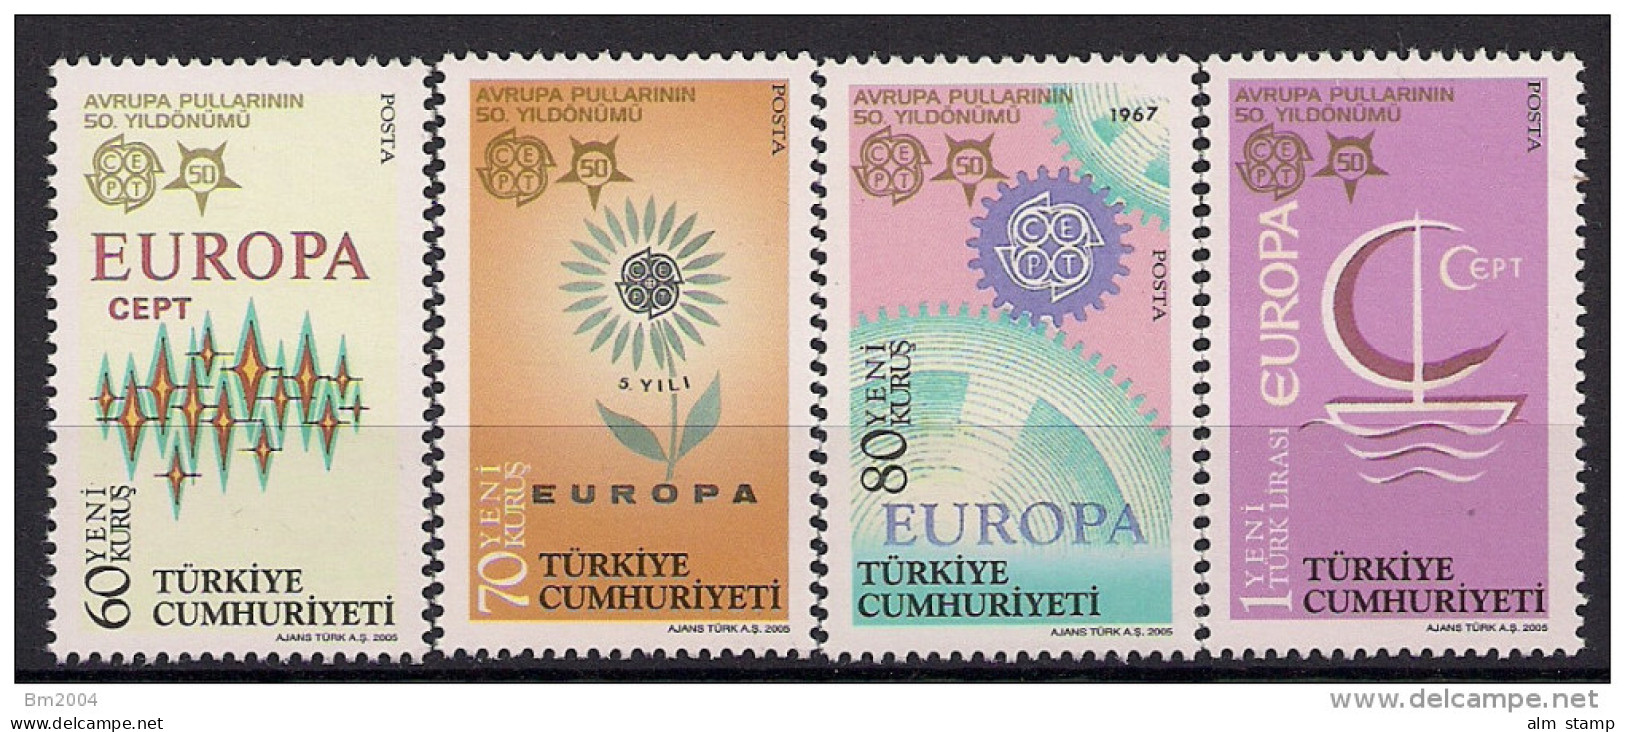 2005 Türkei Türkiye  Mi 3487-0 **MNH  50 Jahre Europamarken - Neufs